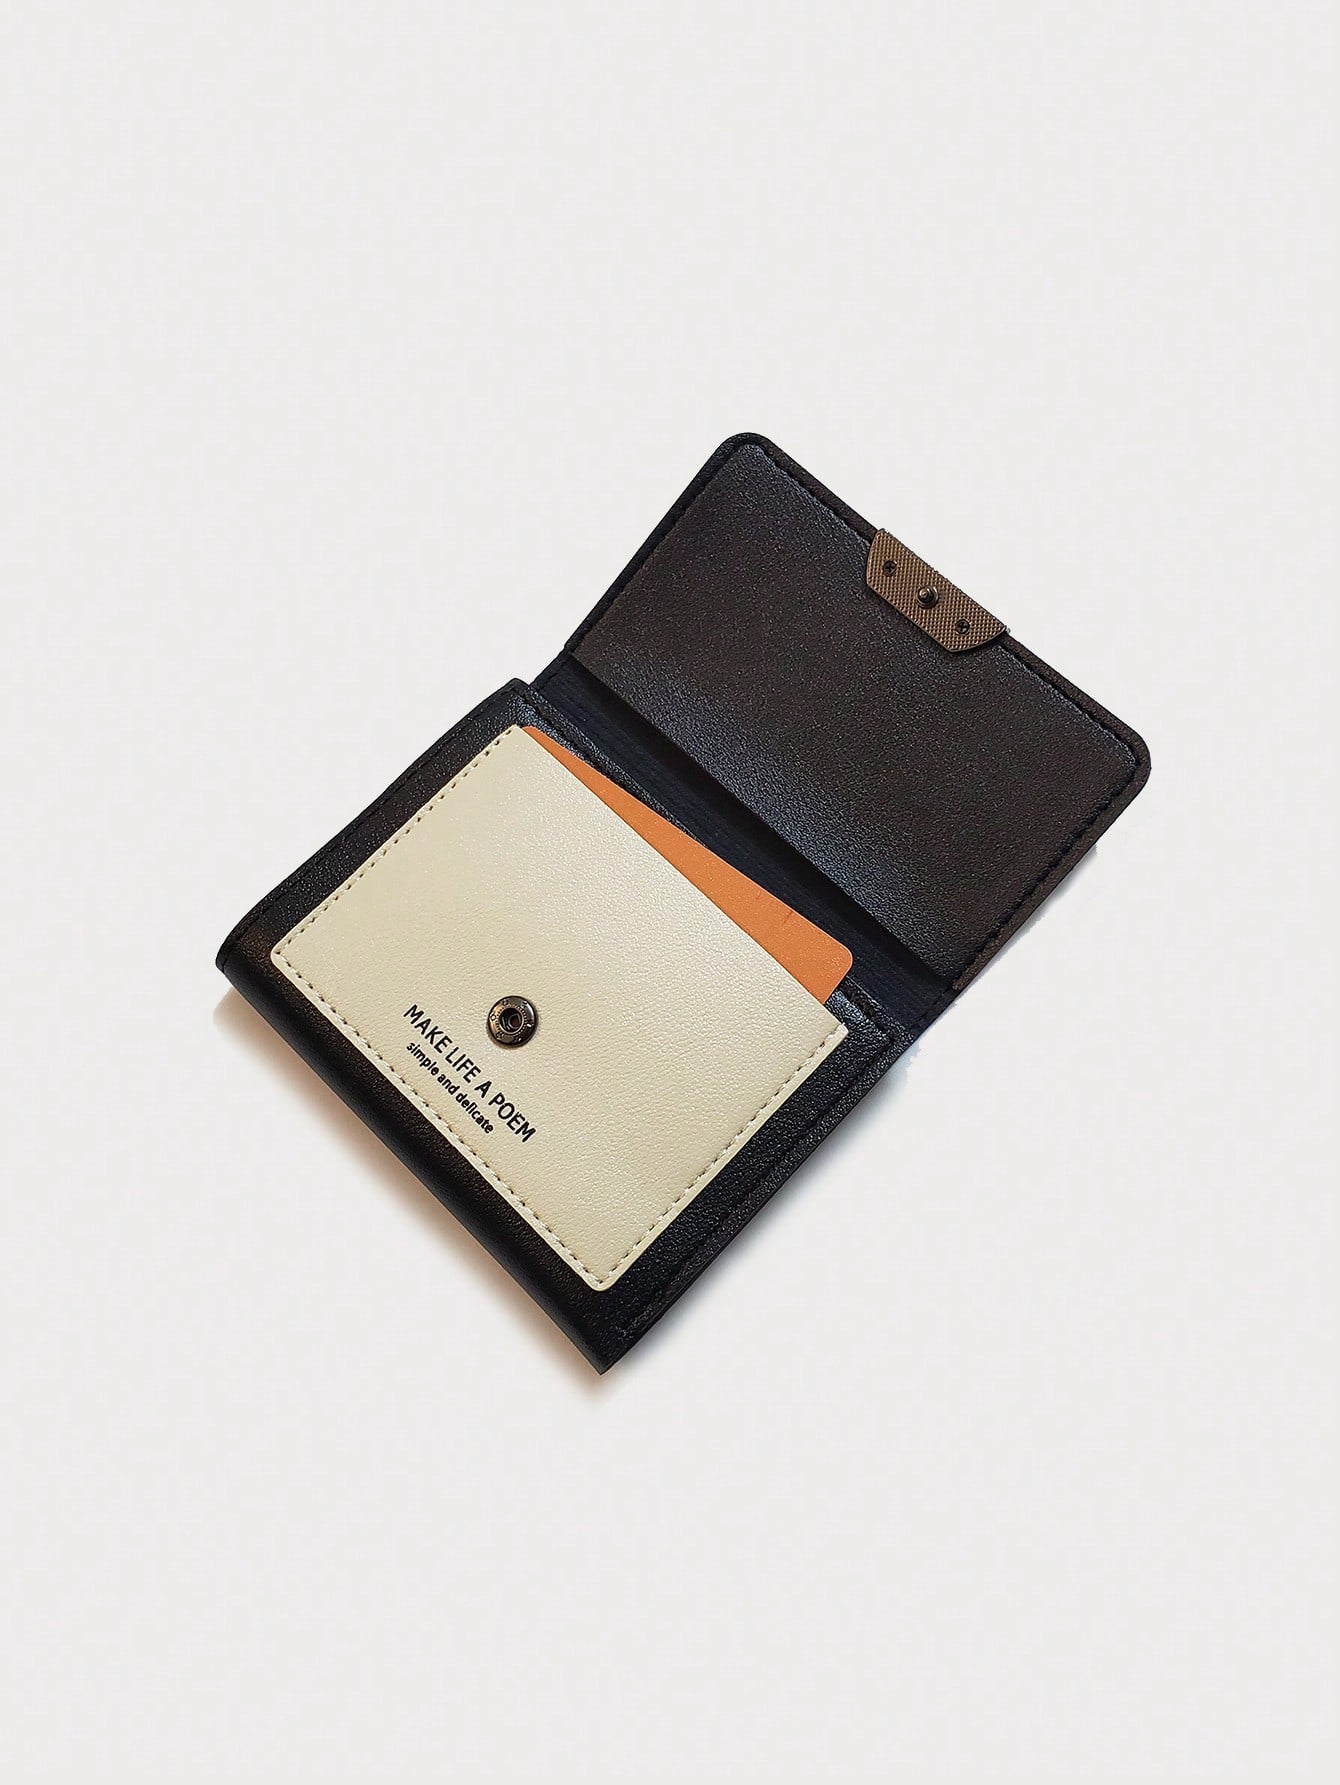 محفظة قصيرة بتصميم قط محافظ jewel  